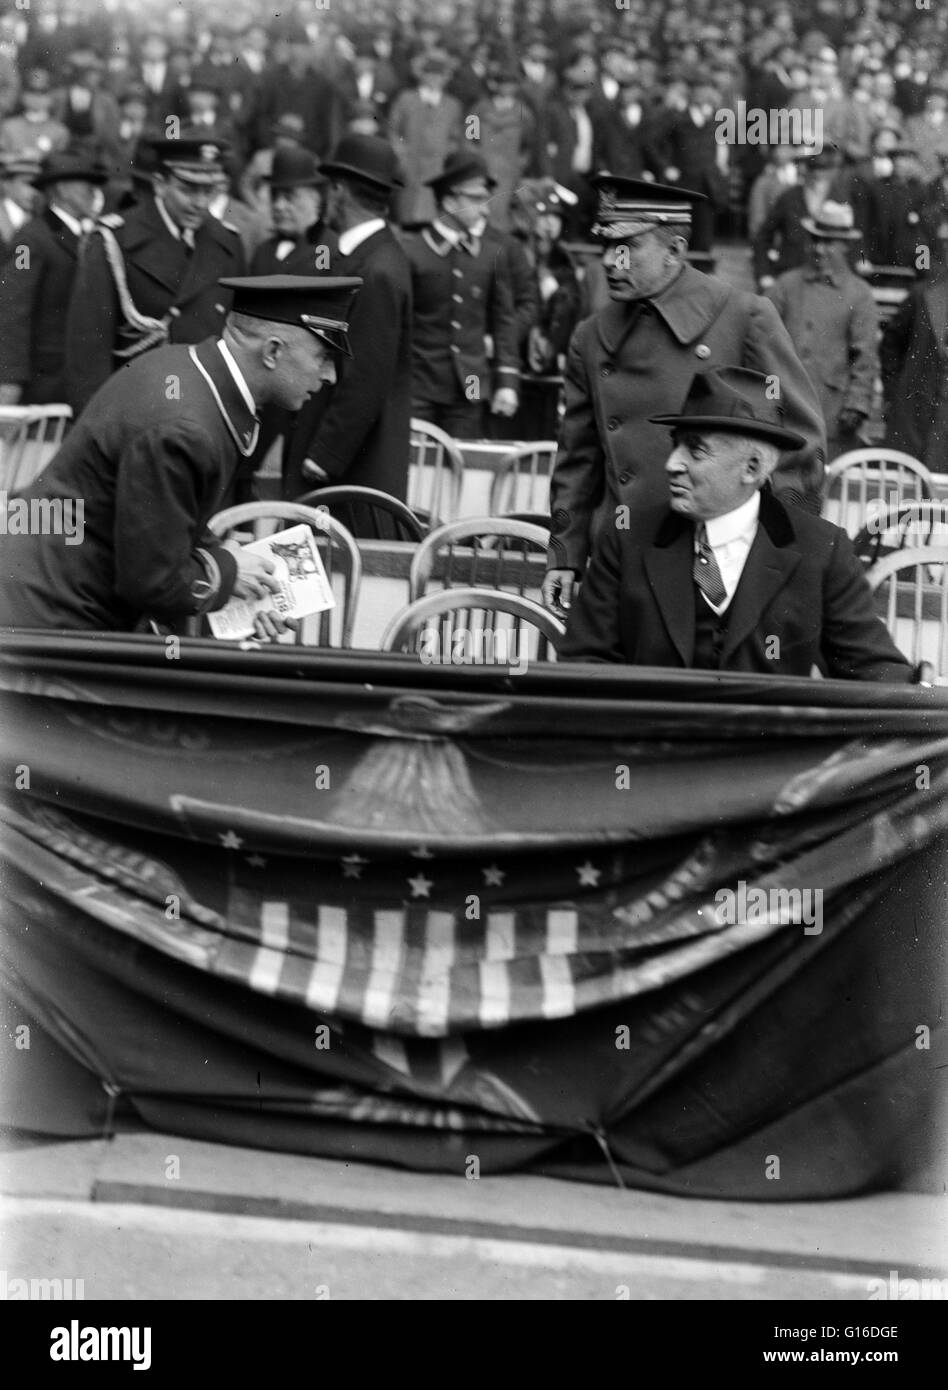 Le président Harding au Yankee Stadium. Warren Gamaliel Harding (2 novembre 1865 - 2 août, 1923) a été le 29e président des États-Unis (1921-23), un républicain de l'Ohio ayant servi dans le sénat de l'Ohio puis dans le sénat des États-Unis, où il pla Banque D'Images